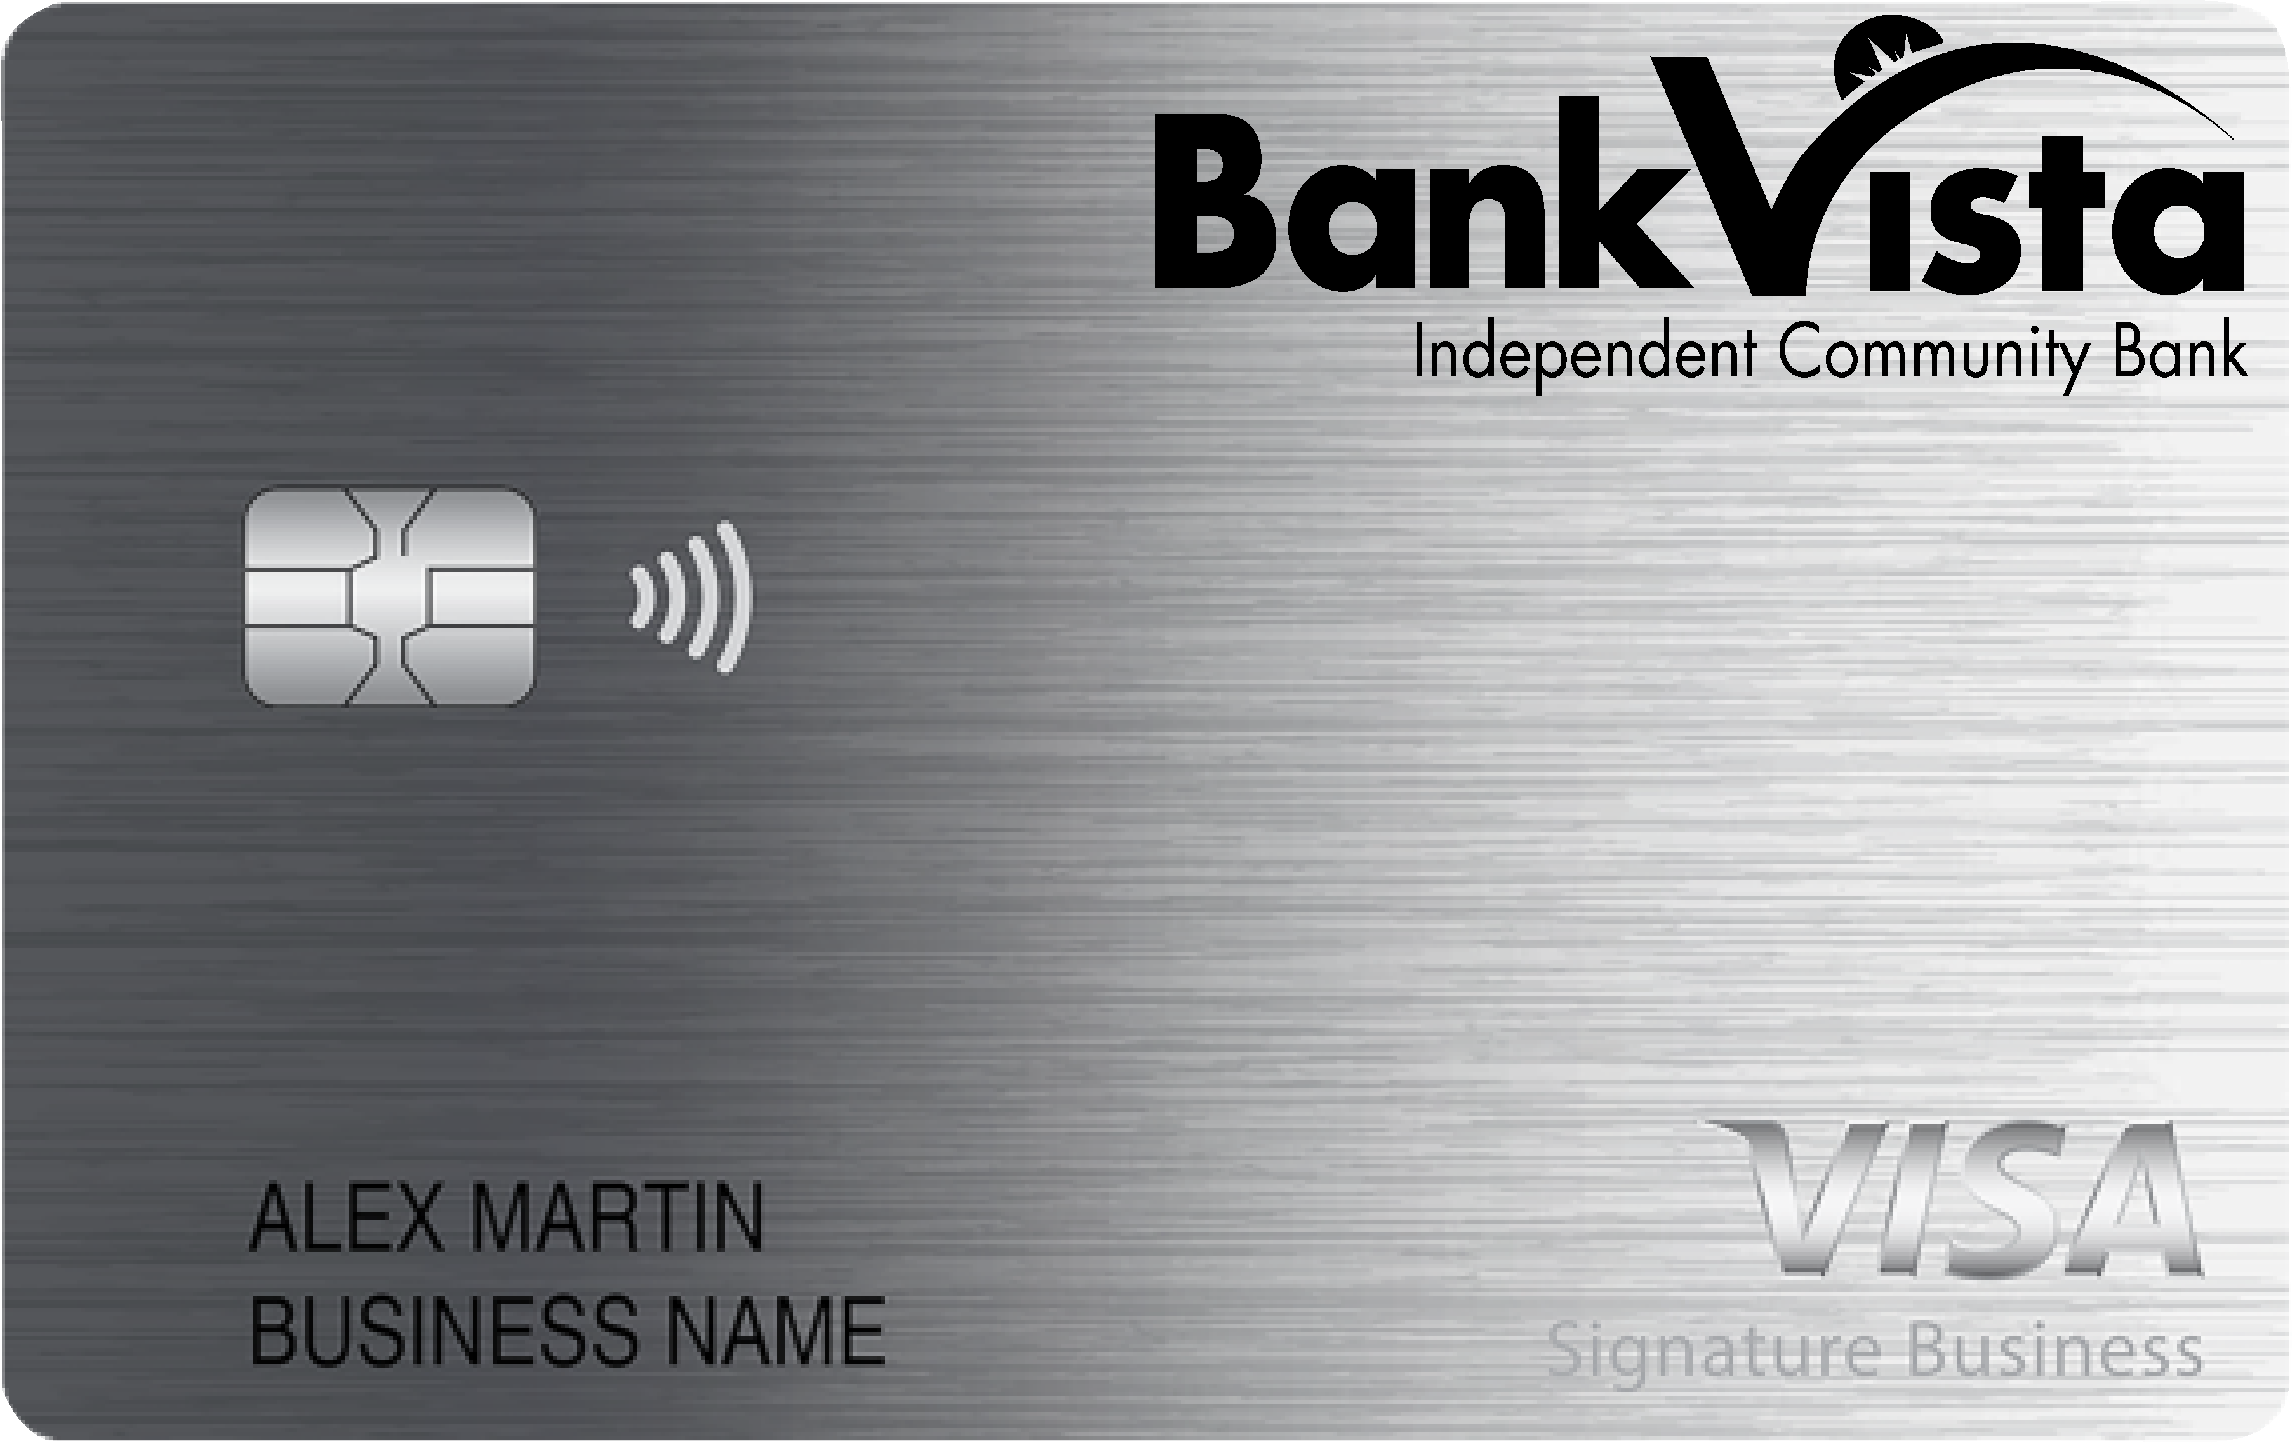 BankVista Smart Business Rewards Card